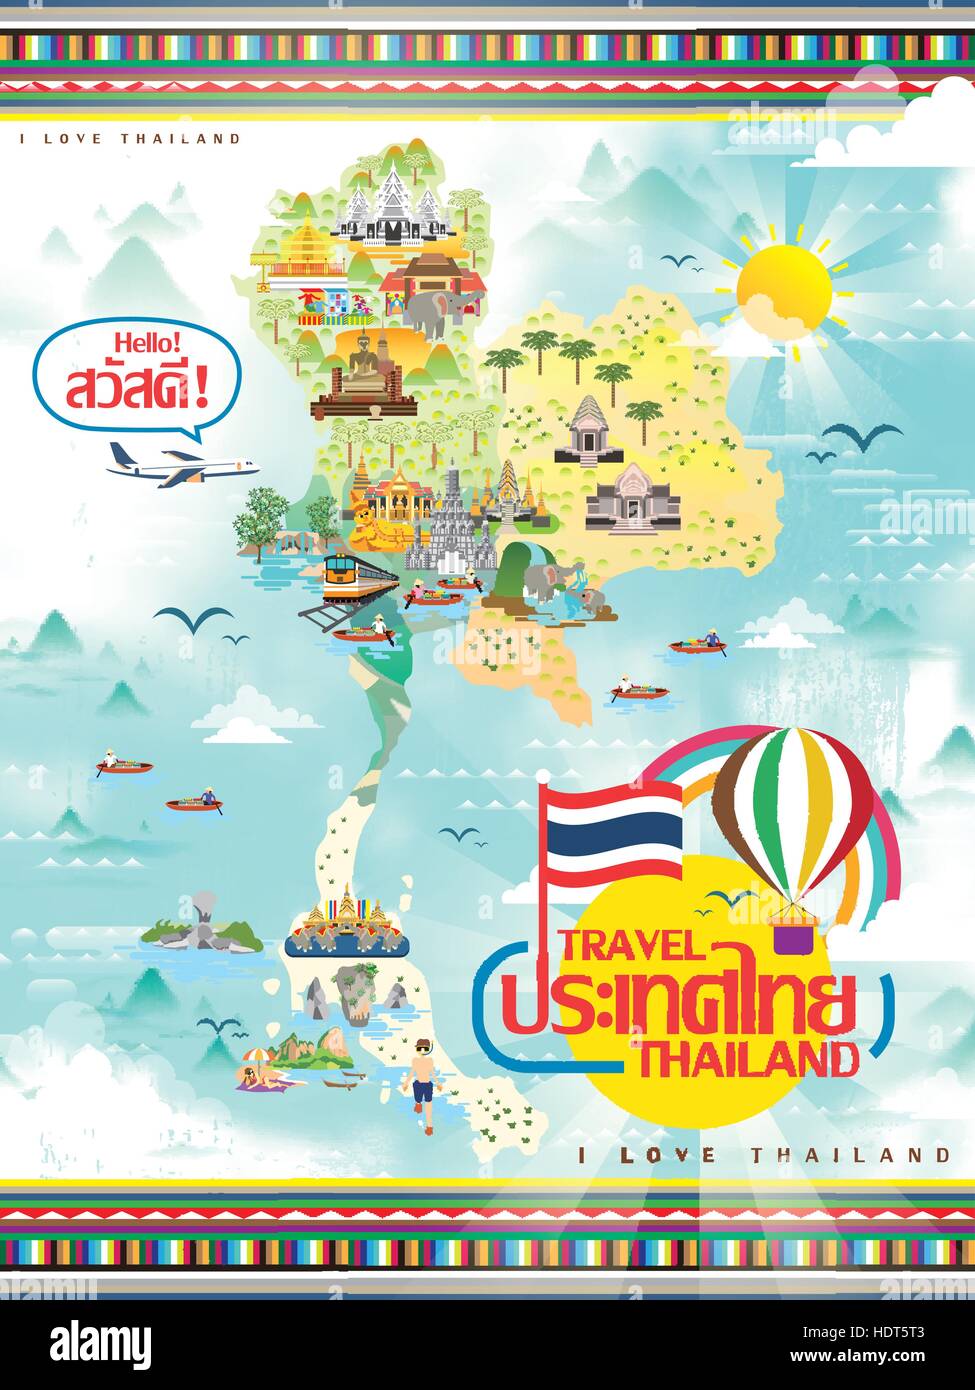 La carte de voyage Thaïlande attrayant dans un style plat - Thaïlande et bonjour mots en thaï Illustration de Vecteur